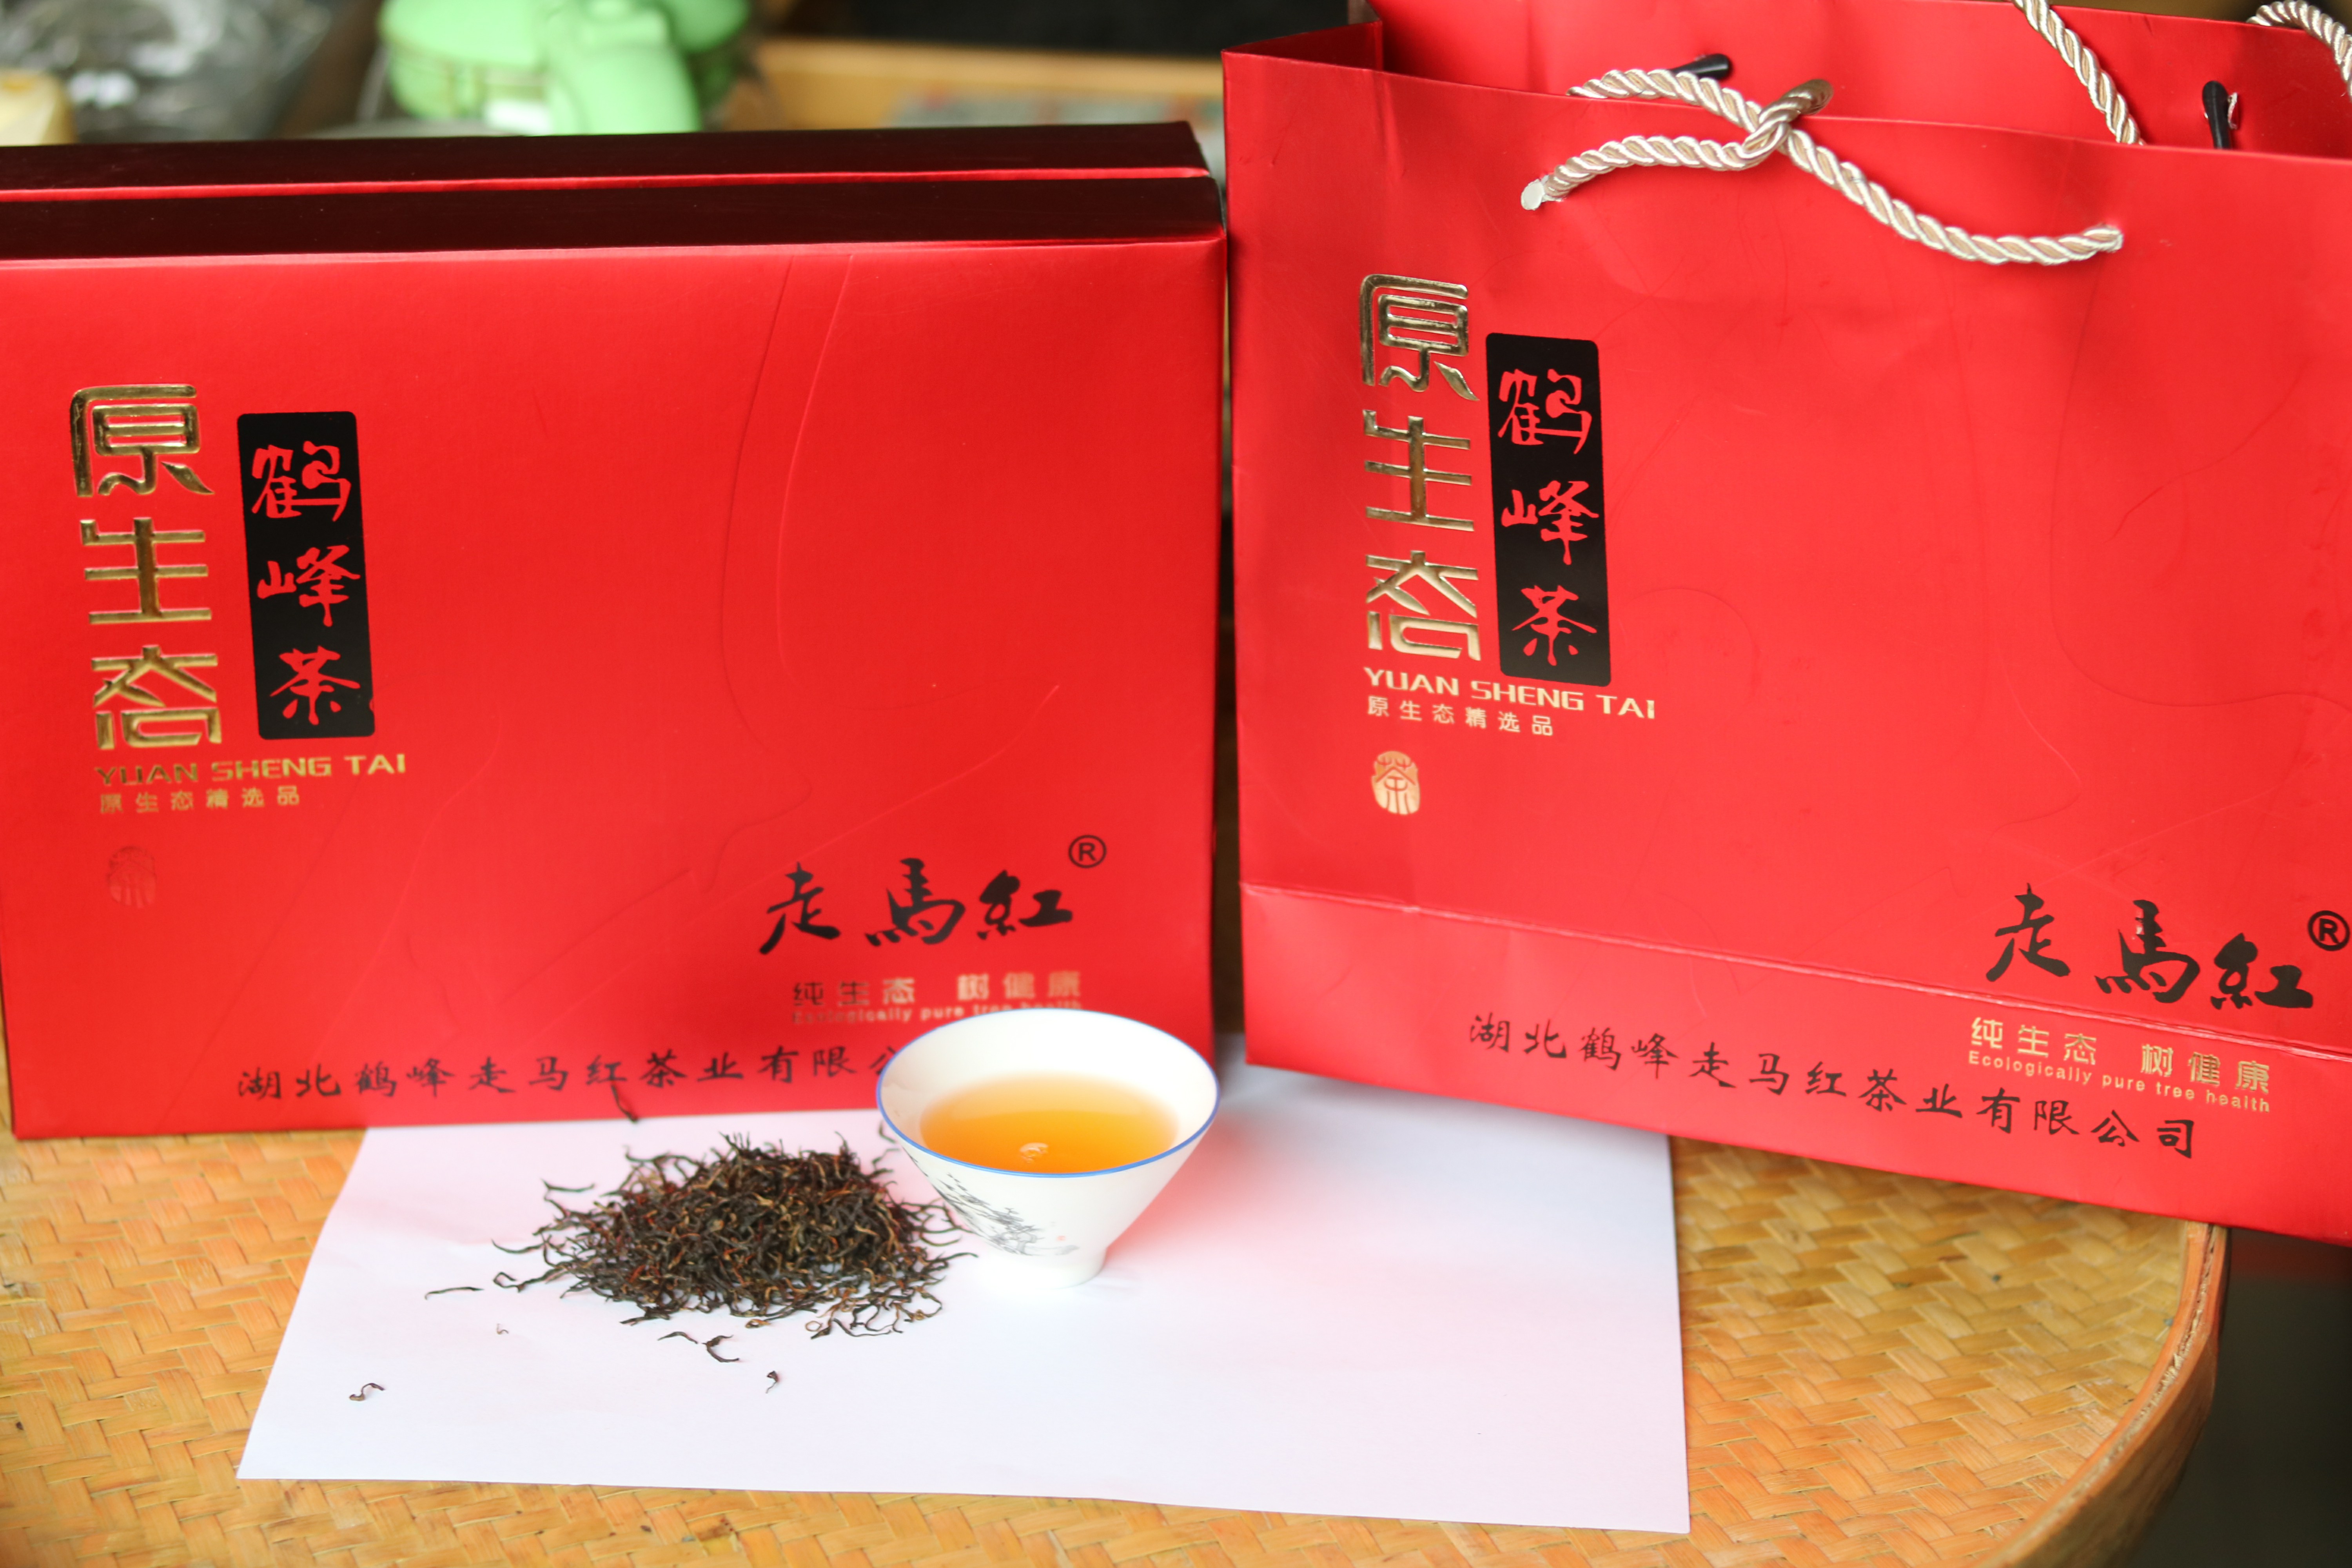 走马红红茶，鹤峰富硒茶叶走马红红茶 中国地理标志产品，我国古老产茶区之一，宜红茶主场地， 富硒茶